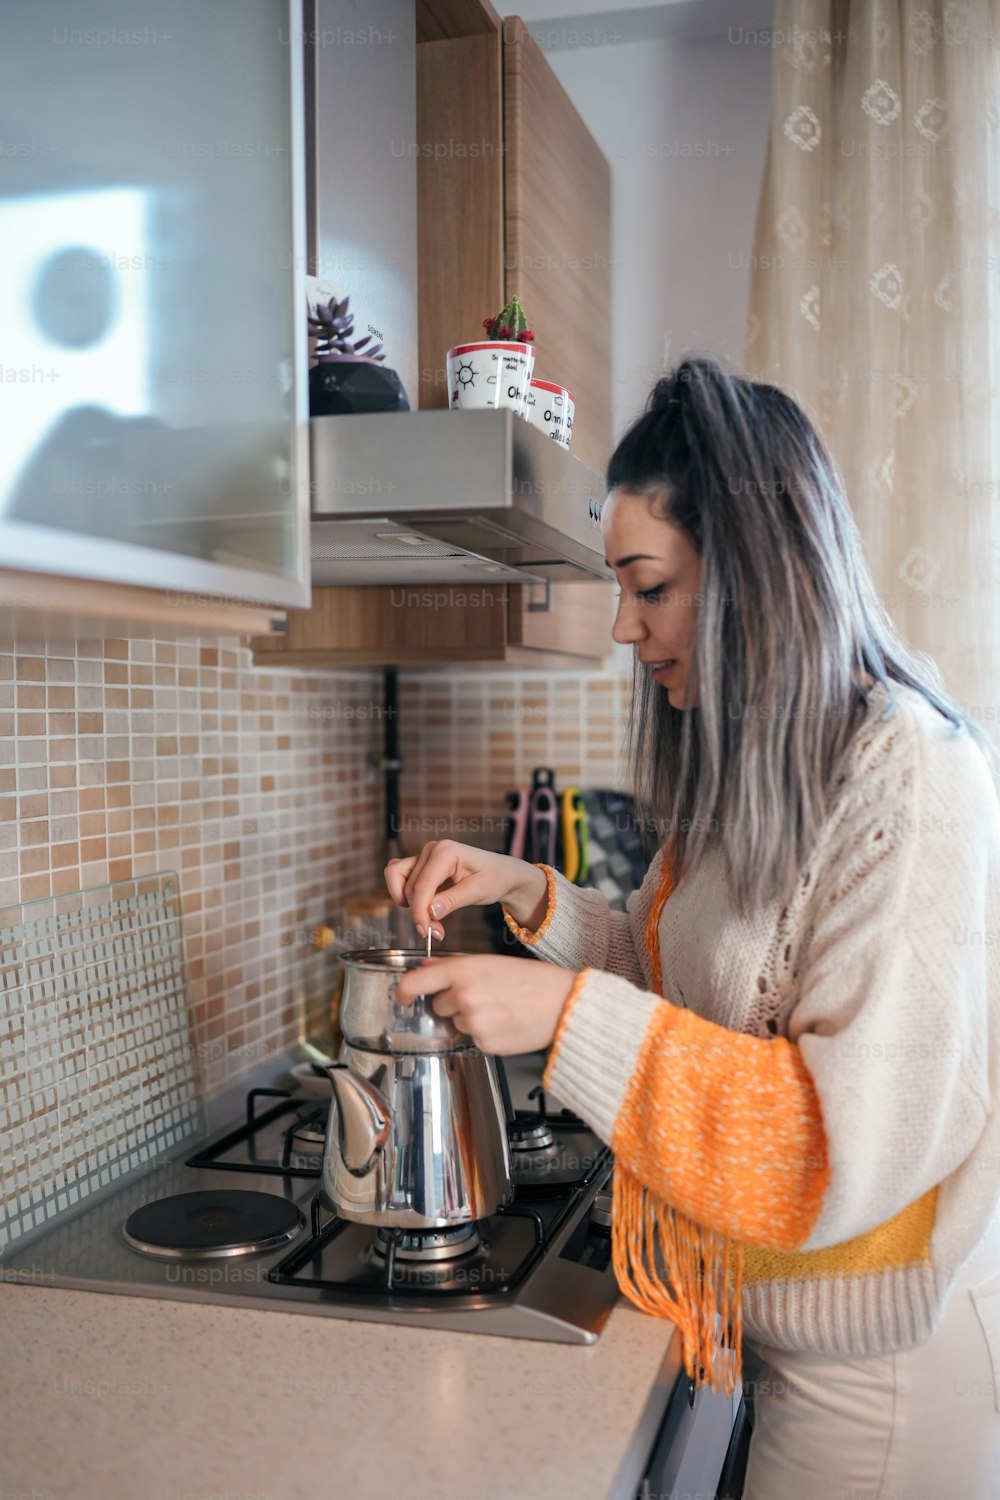 Eine Frau, die in einer Küche steht und Essen zubereitet